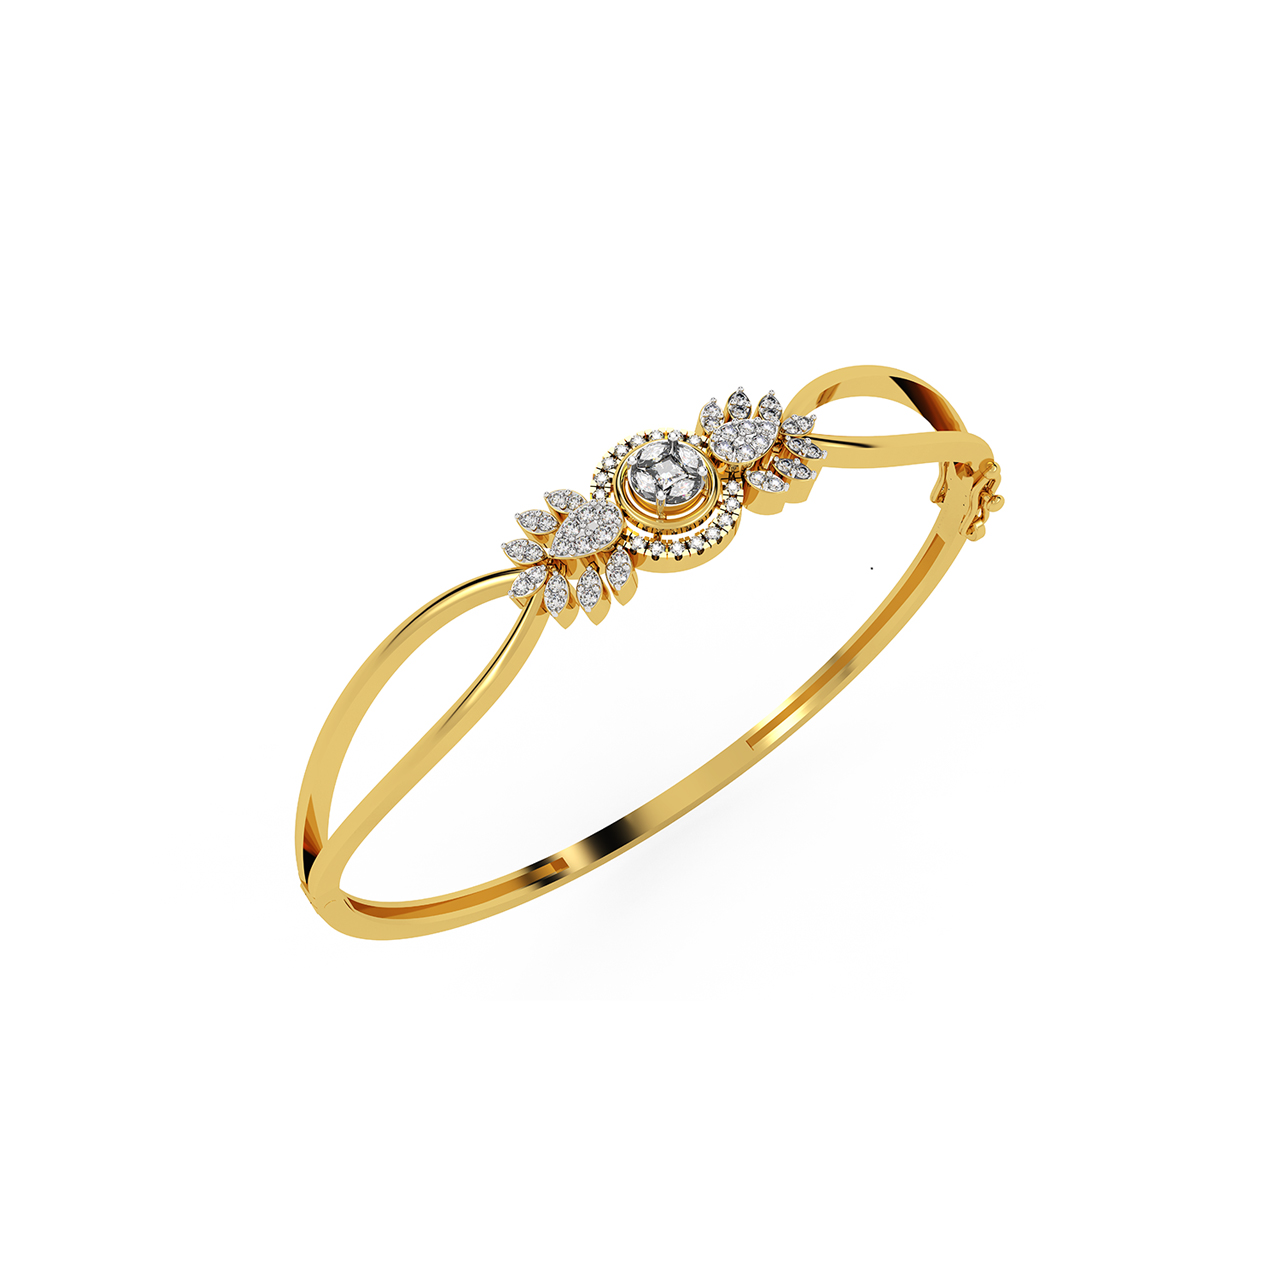 Scattered Diamond Bracelet - Gilded by G.St